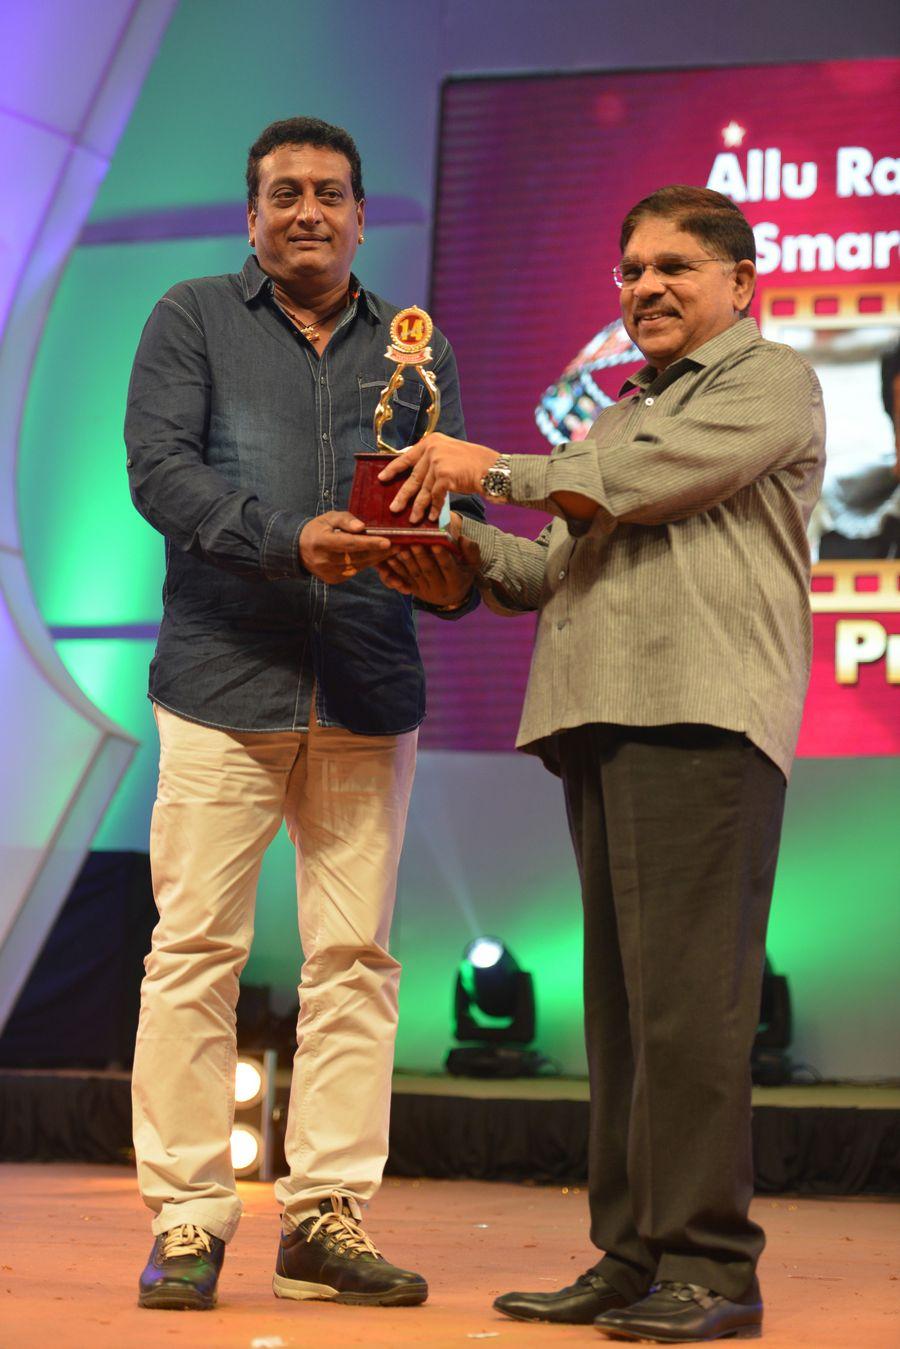 Santosham South Indian Film awards 2016 Images